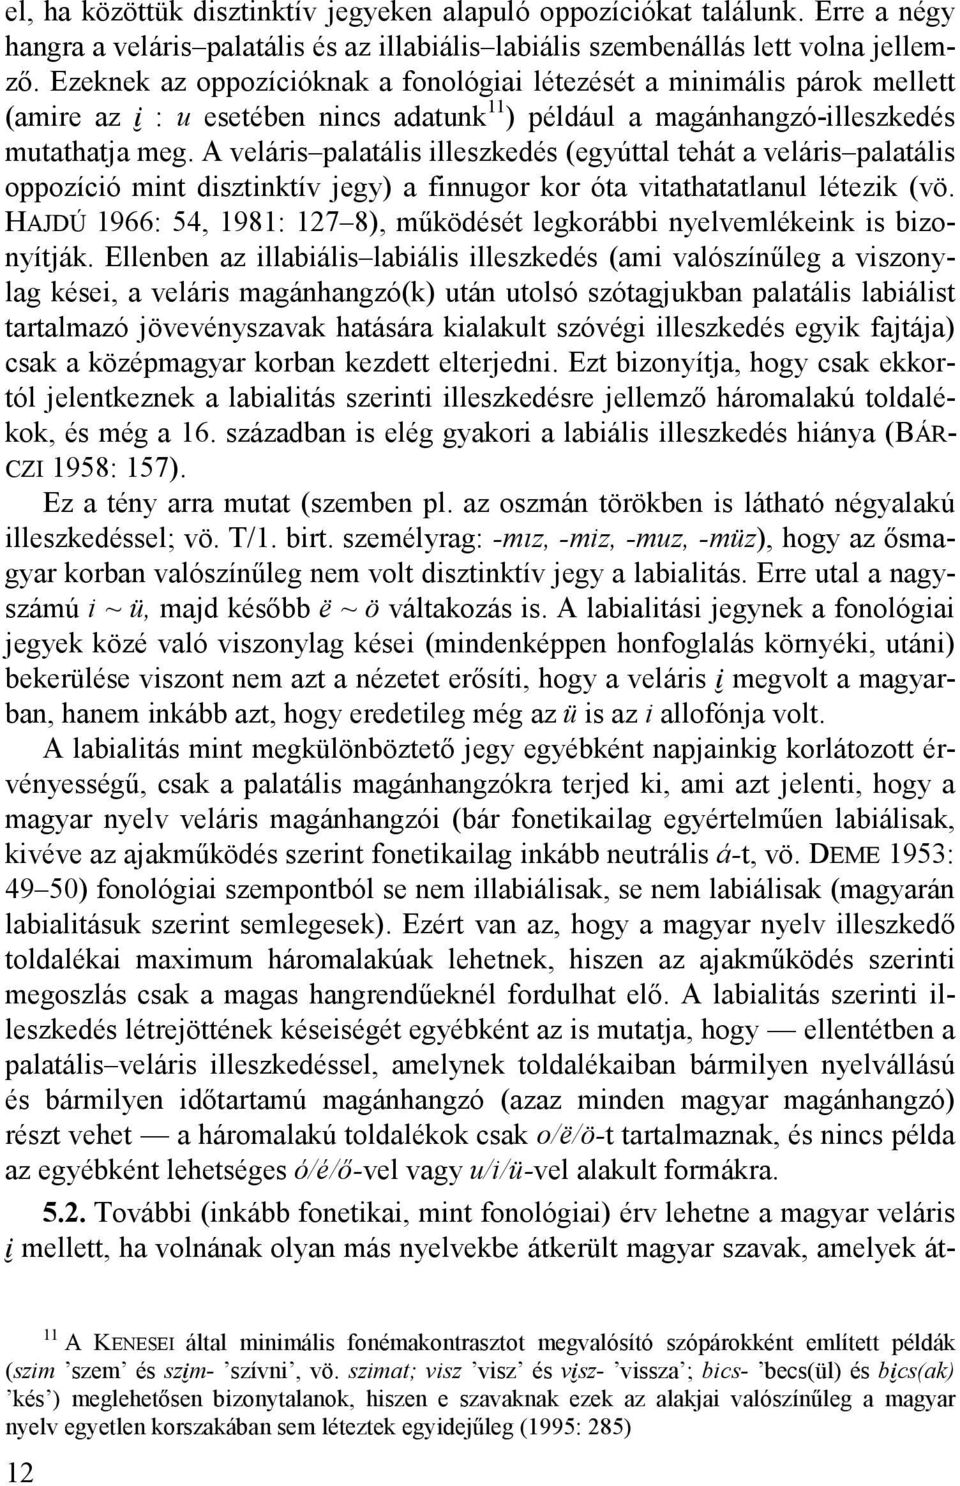 A veláris palatális illeszkedés (egyúttal tehát a veláris palatális oppozíció mint disztinktív jegy) a finnugor kor óta vitathatatlanul létezik (vö.